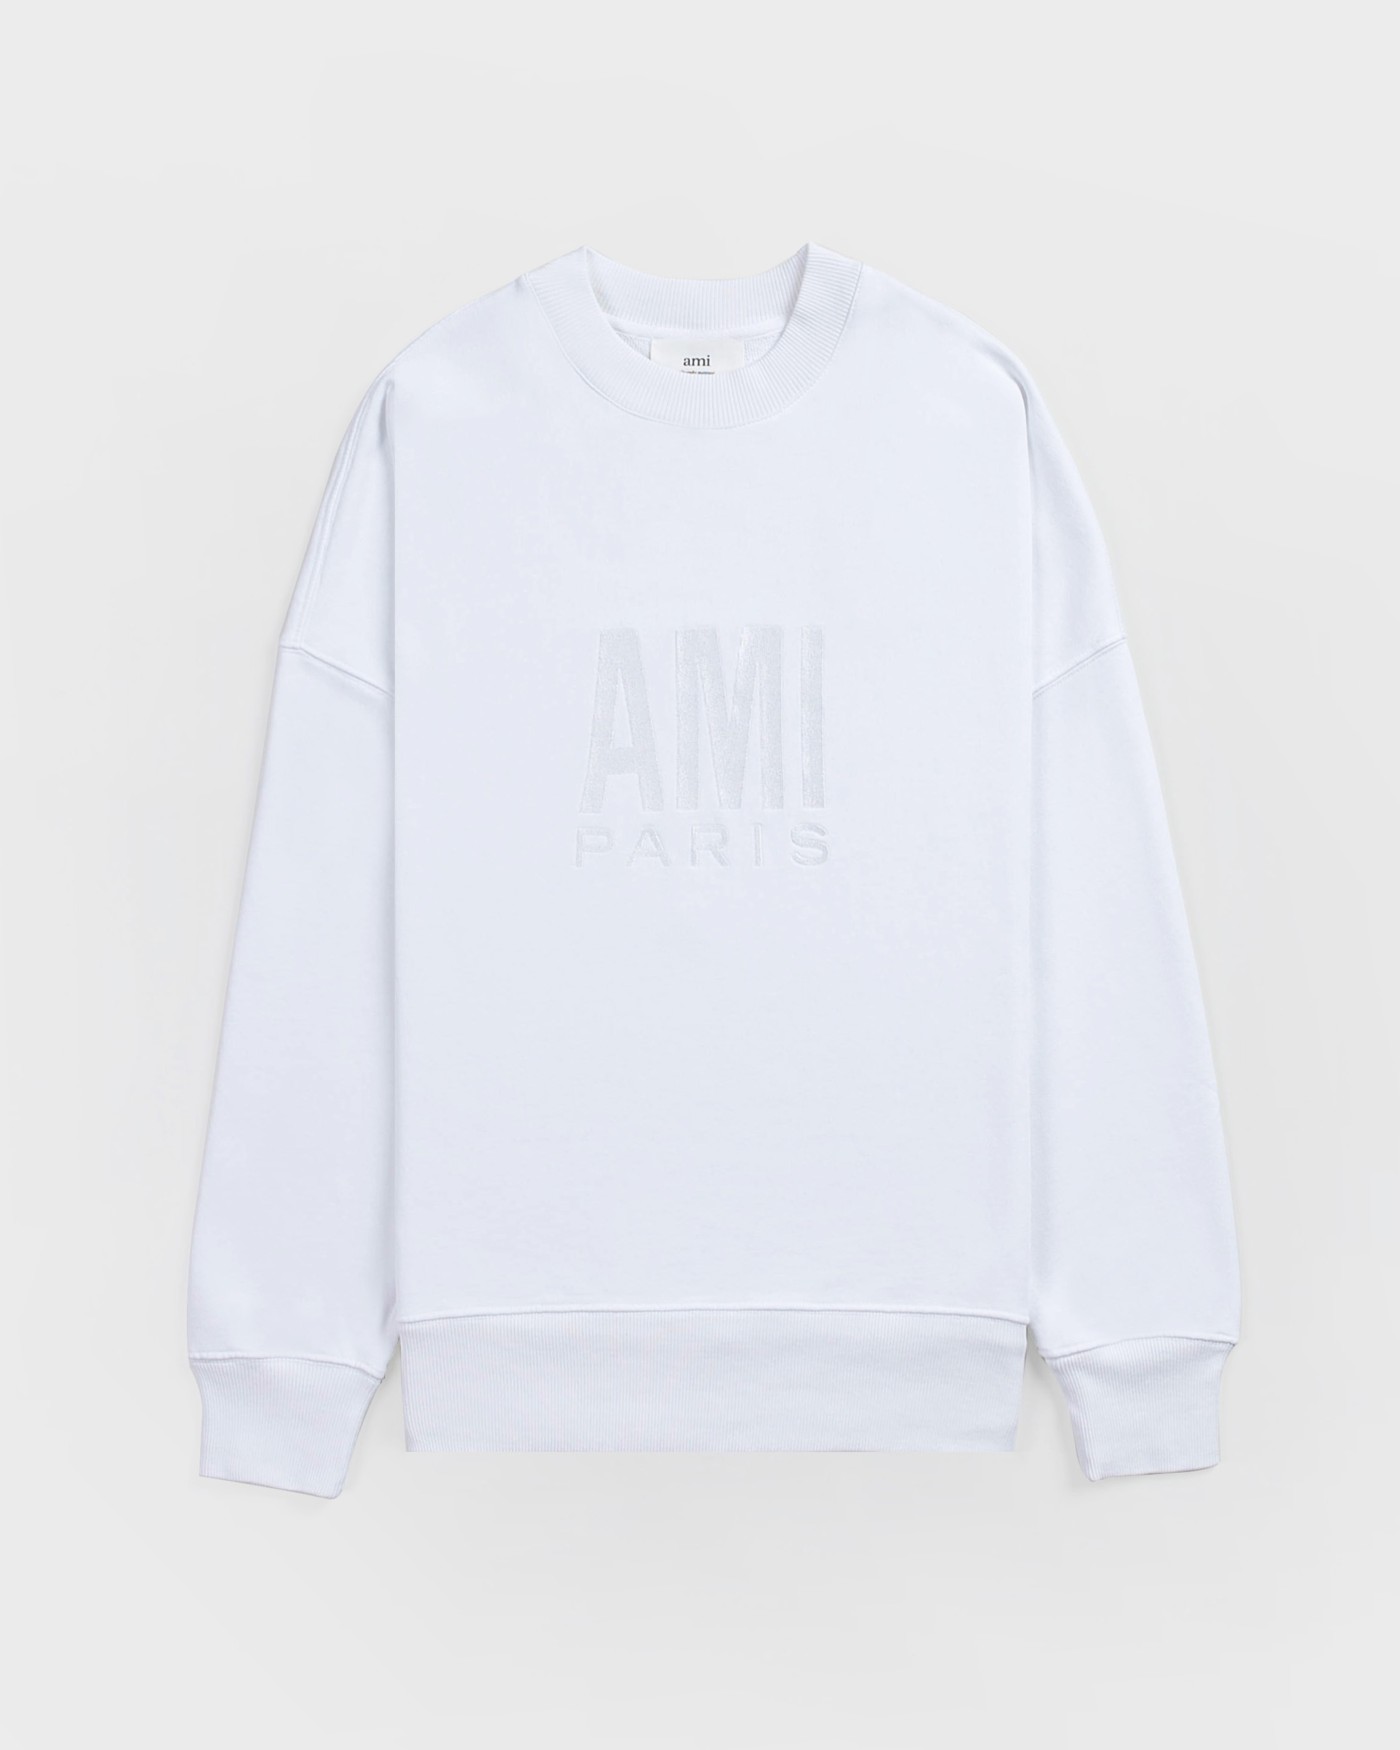 AMI | AMI 男士套头卫衣白色 USW003-731-100商品图片,独家减免邮费